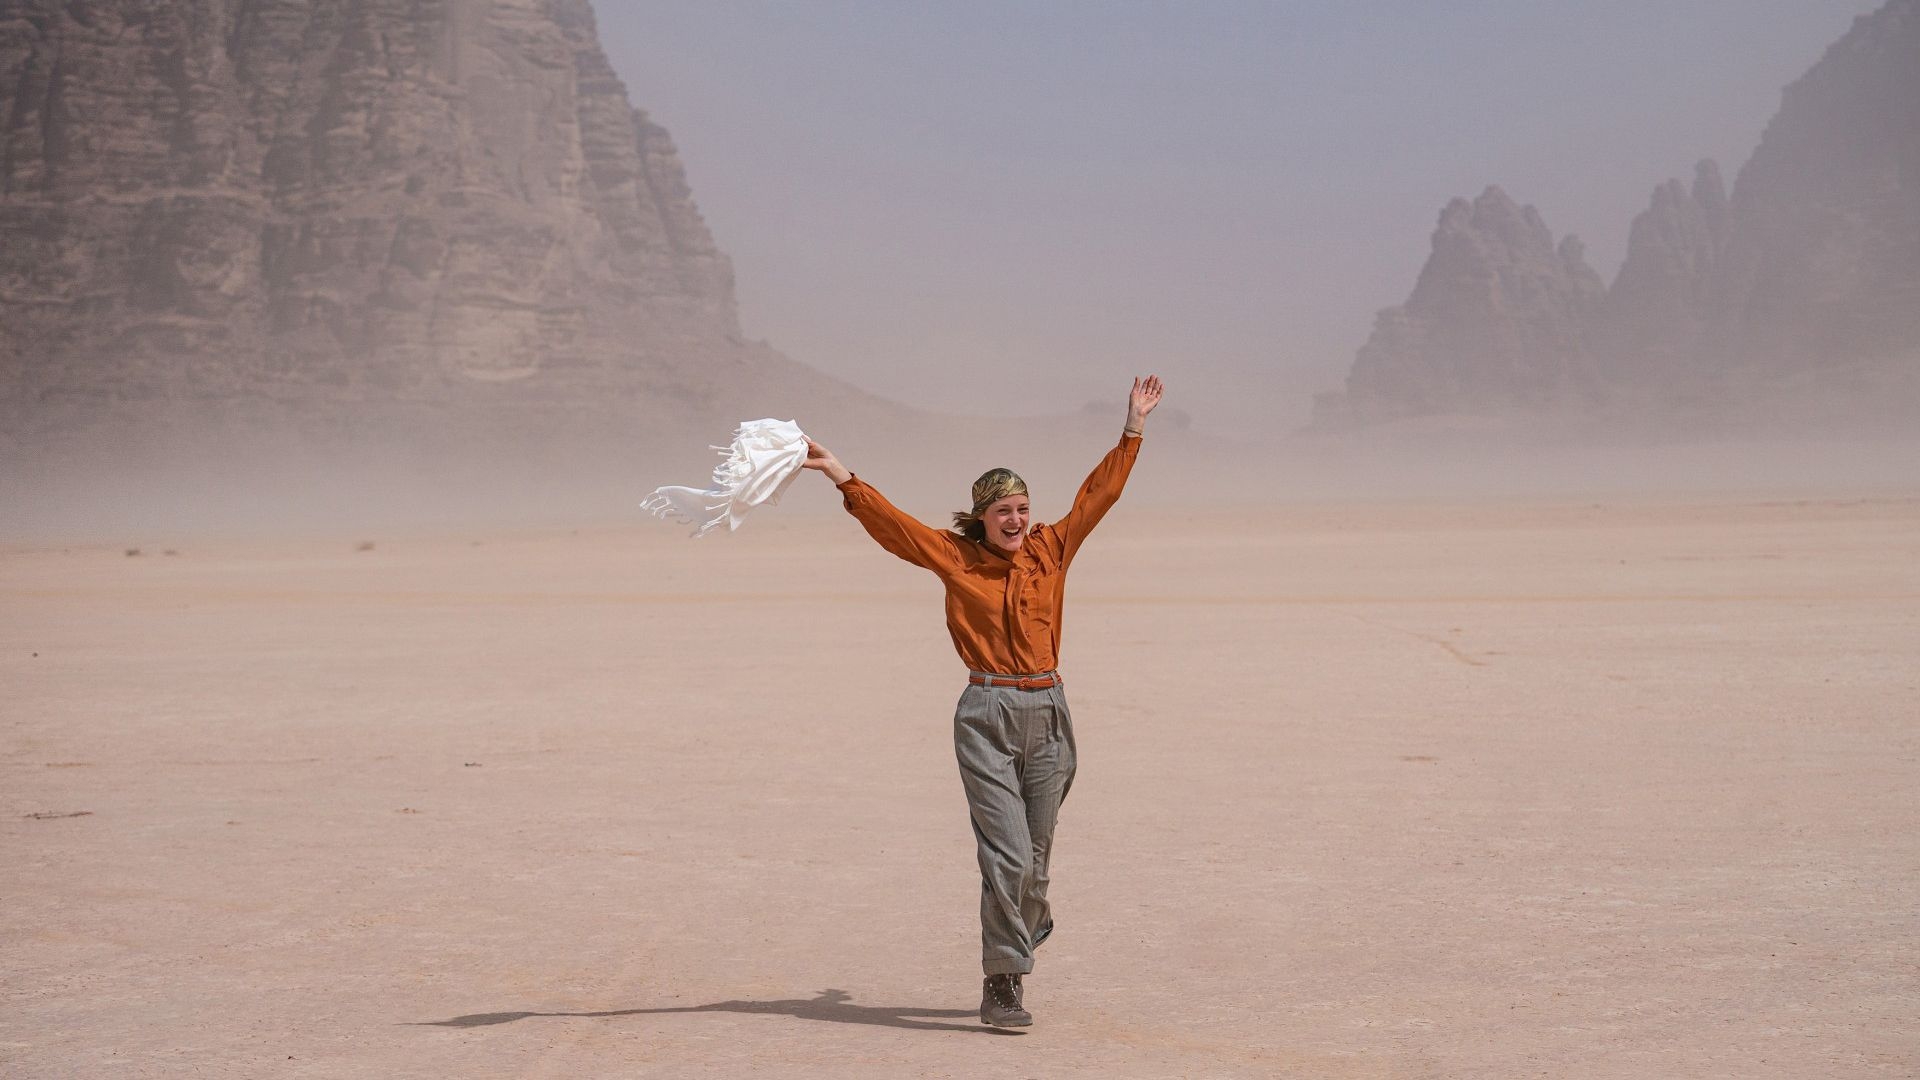 Ingeborg Bachmann - Journey Into the Desert